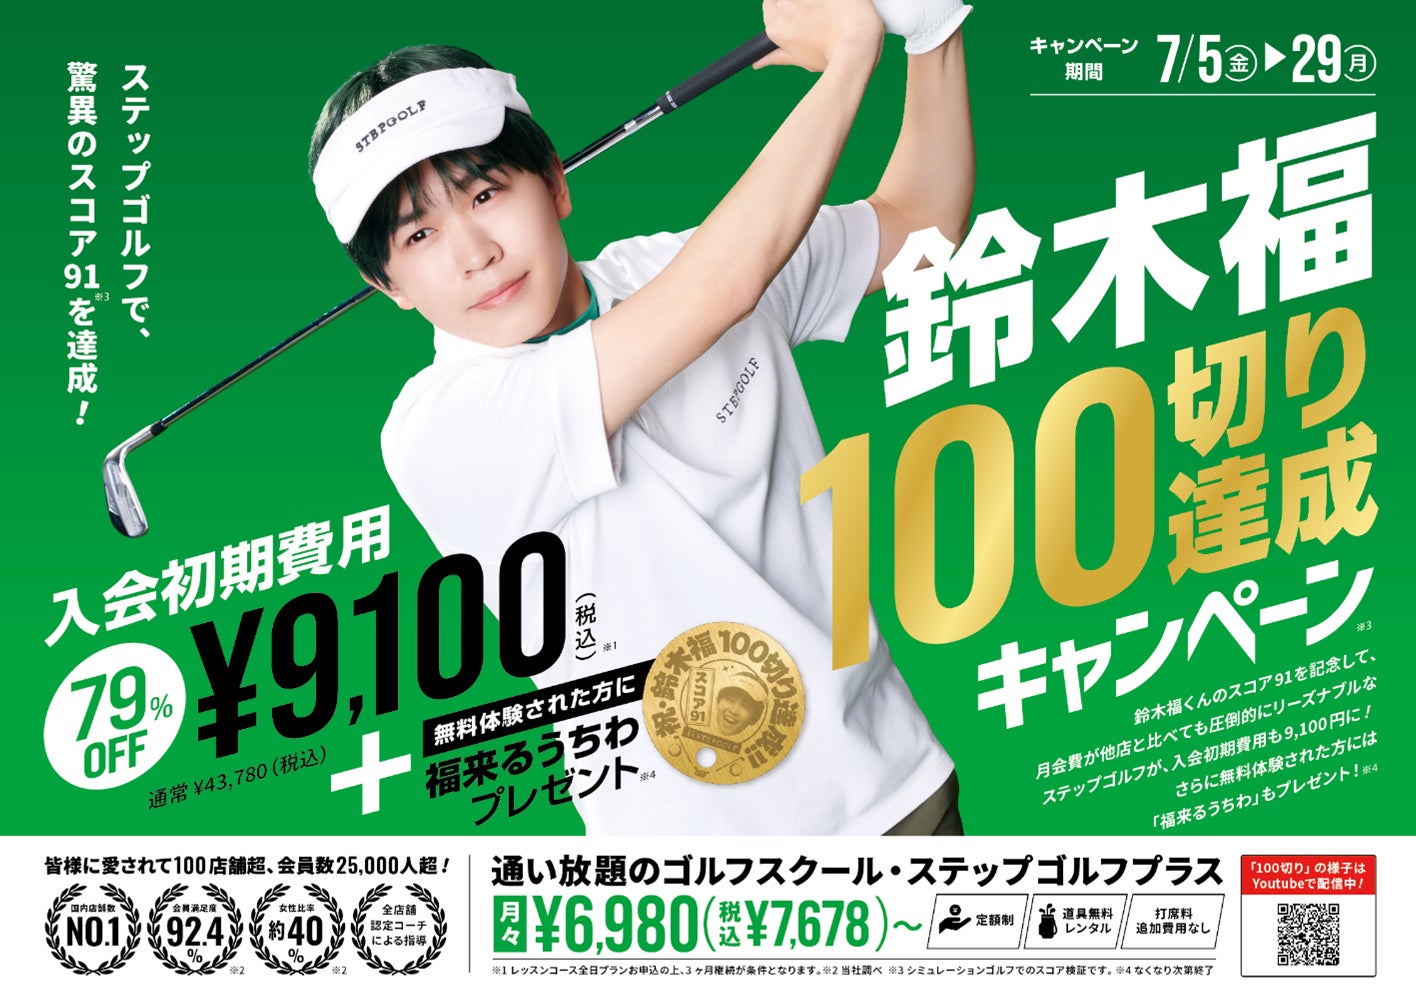 スコア91で100切り達成を発表！達成記念キャンペーン7月5日開始 インドアゴルフスクール「ステップゴルフ」で挑戦した1年鈴木福くん　